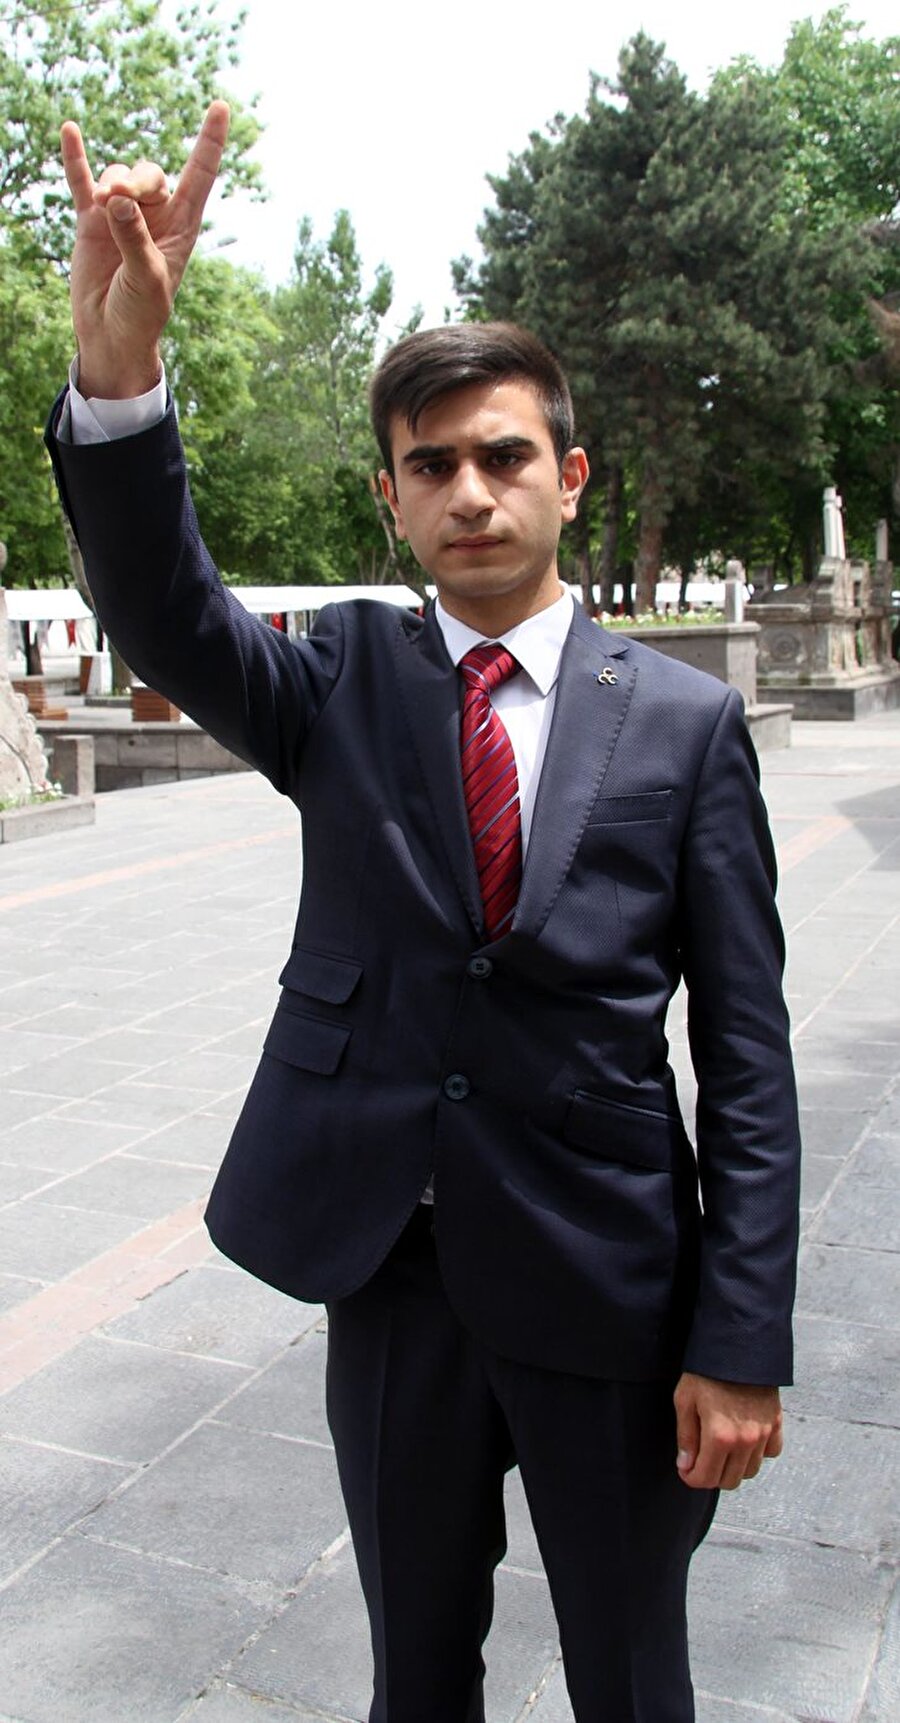 Veli Oğuzhan Öztürk - MHP

                                    
                                    Lise son sınıf öğrencisi olan Veli Oğuzhan Öztürk, MHP'nin en genç milletvekili adaylarından oldu. 18 yaşında olan Öztürk Kayseri 10’uncu sıradan milletvekili adayı oldu. Kayseri 10 milletvekili çıkartıyor. MHP 2015 genel seçimlerinde Kayseri’den 1 milletvekilini Meclis’e yollamıştı.
                                
                                